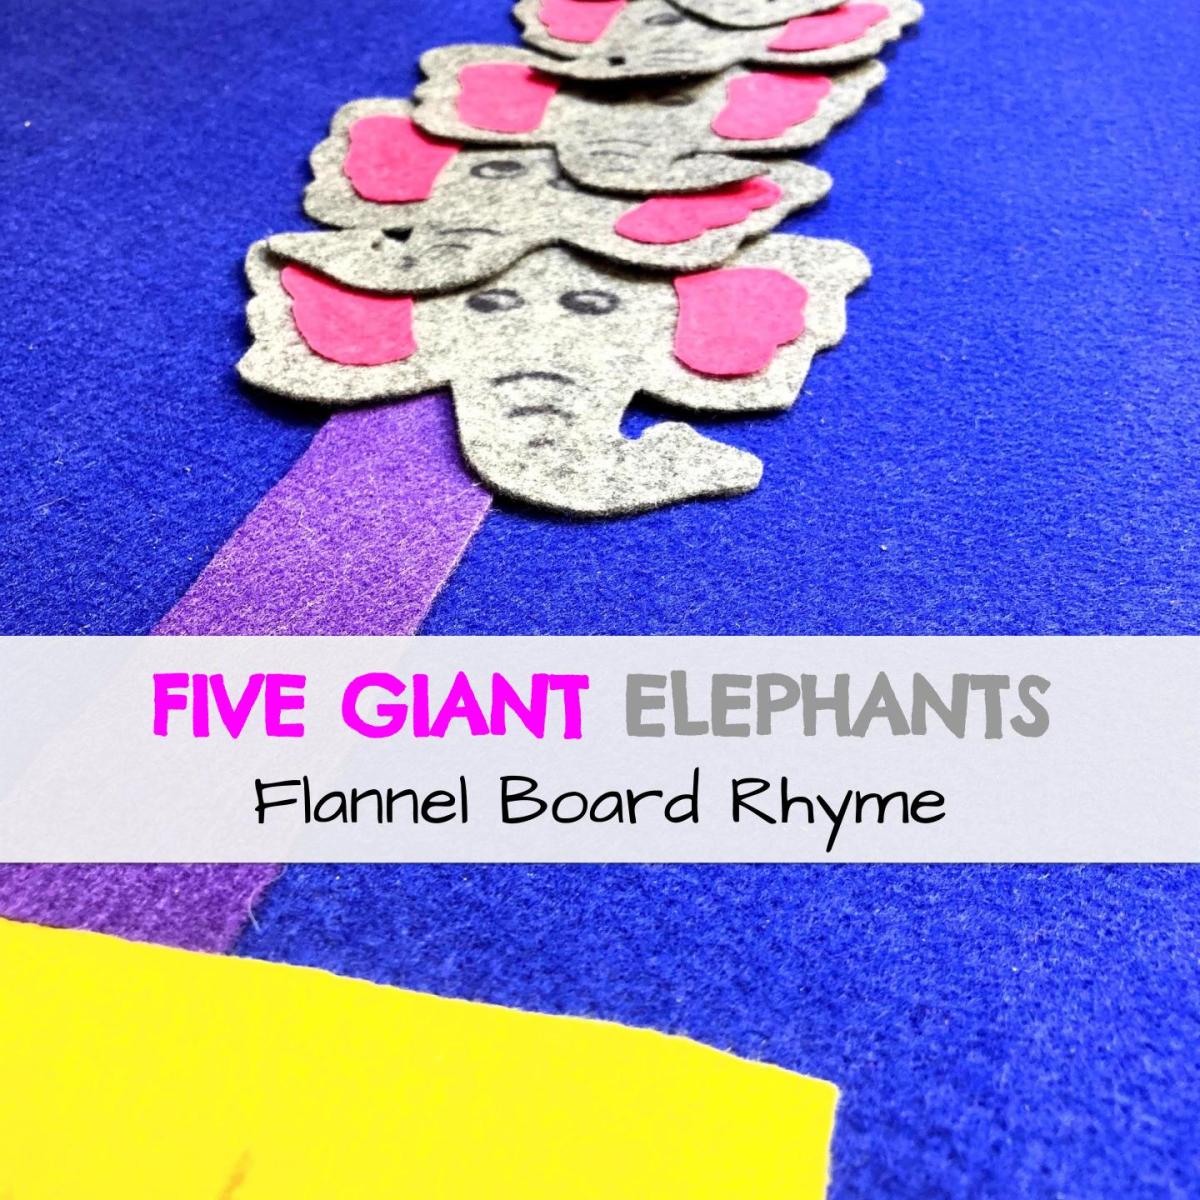 Five Giant Elephants